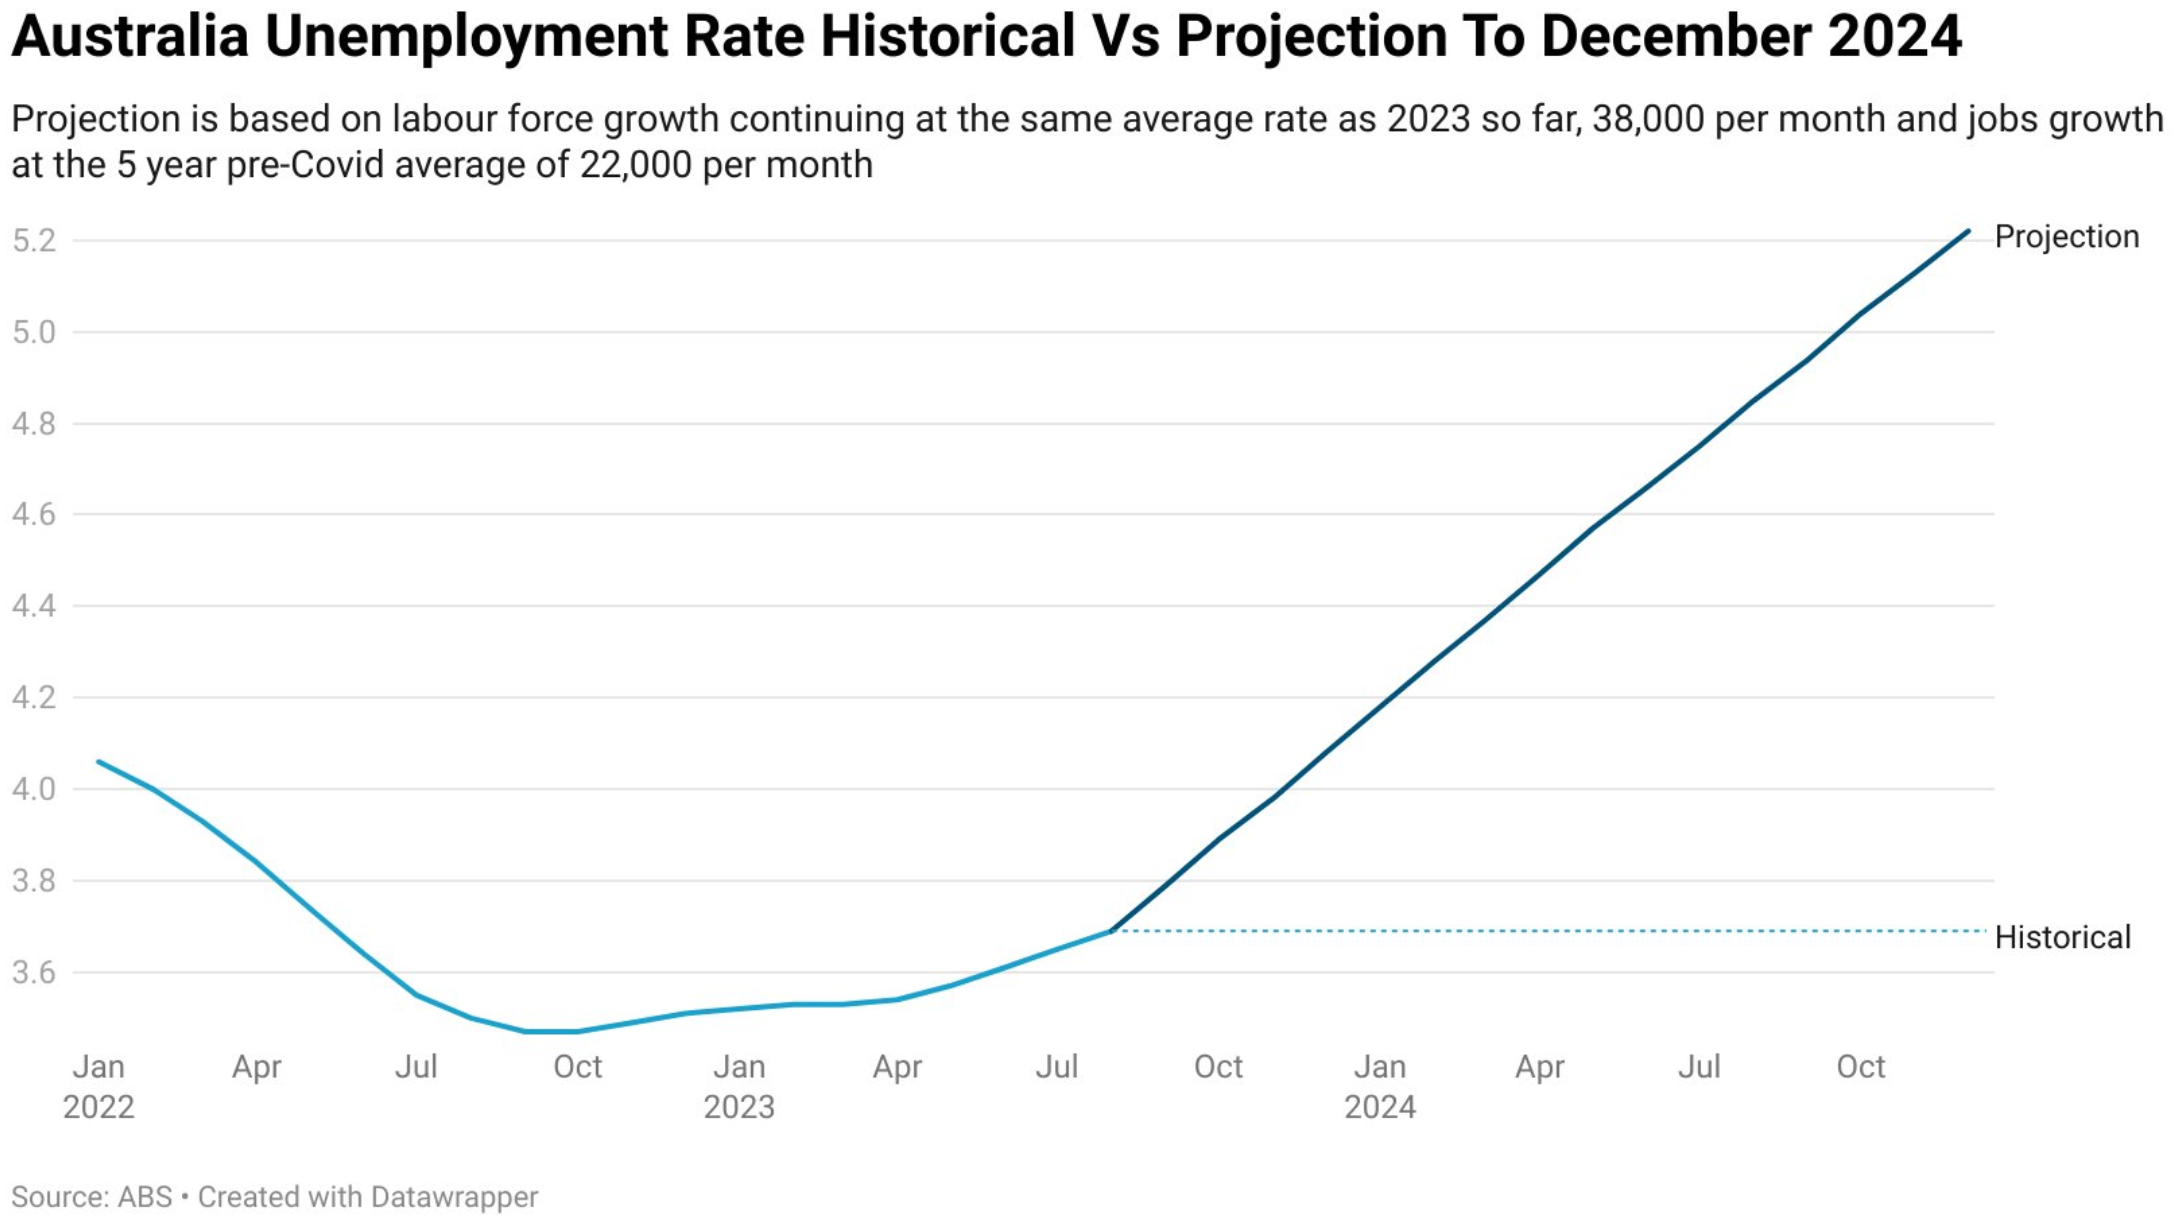 Unemployment projection